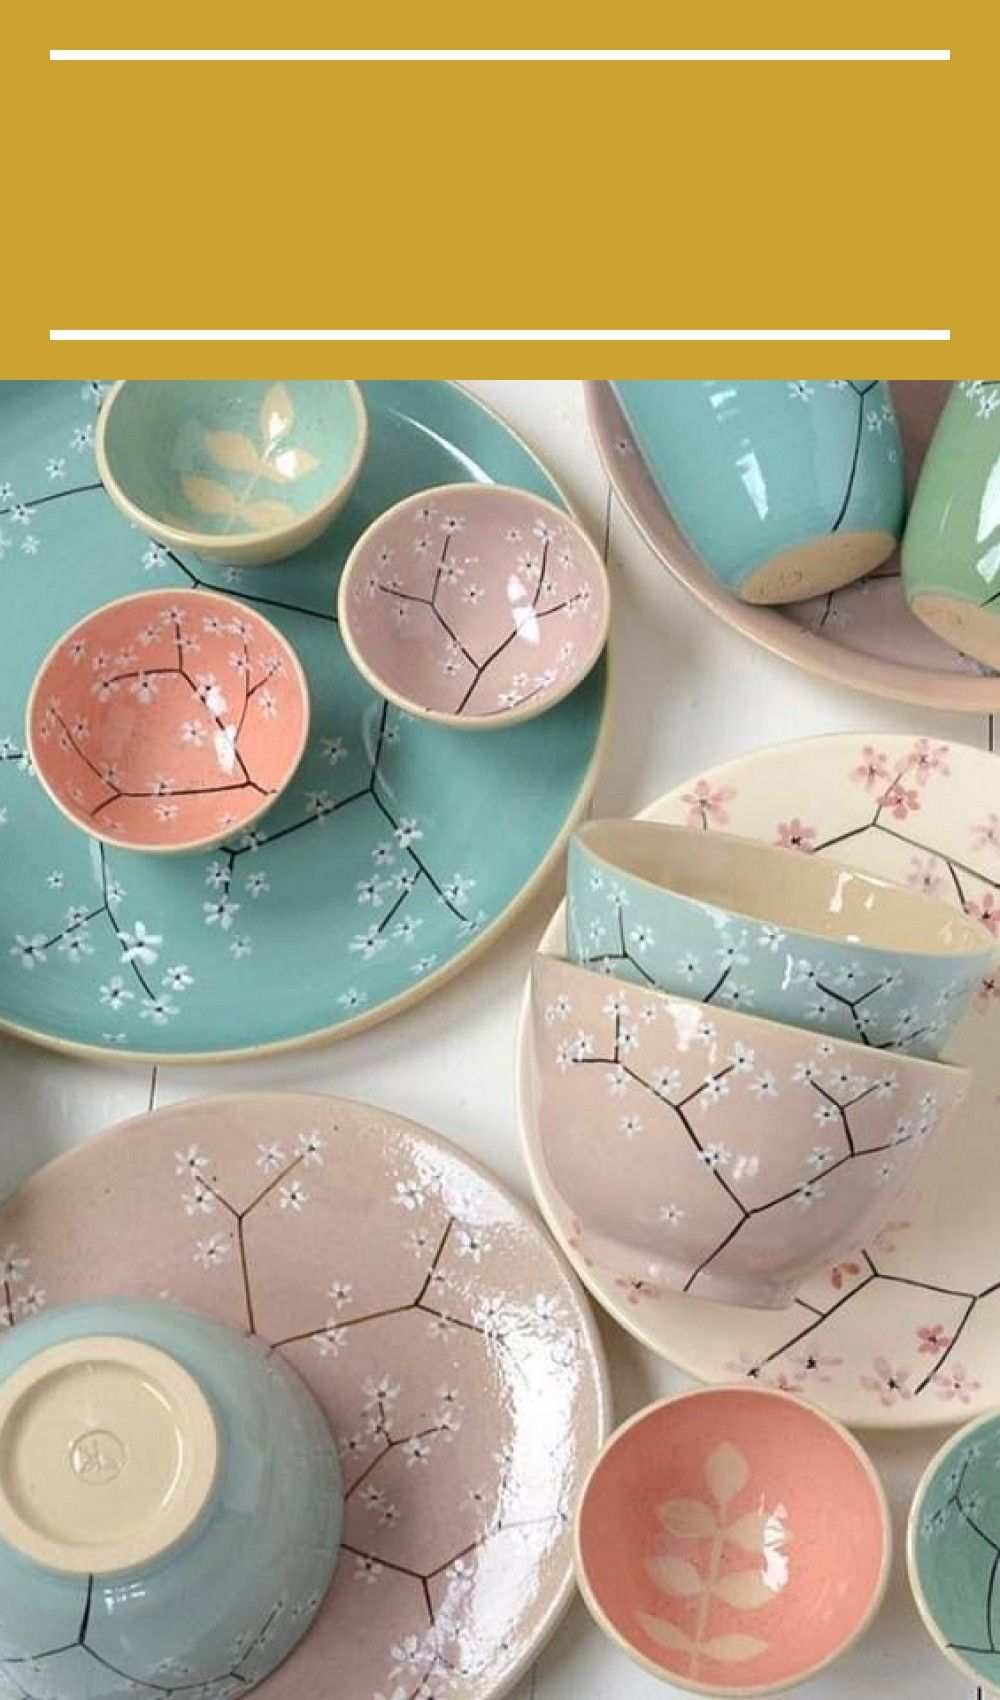 Keramik Bemalen Vintage Keramik Bemalen Keramik Keramik Ideen